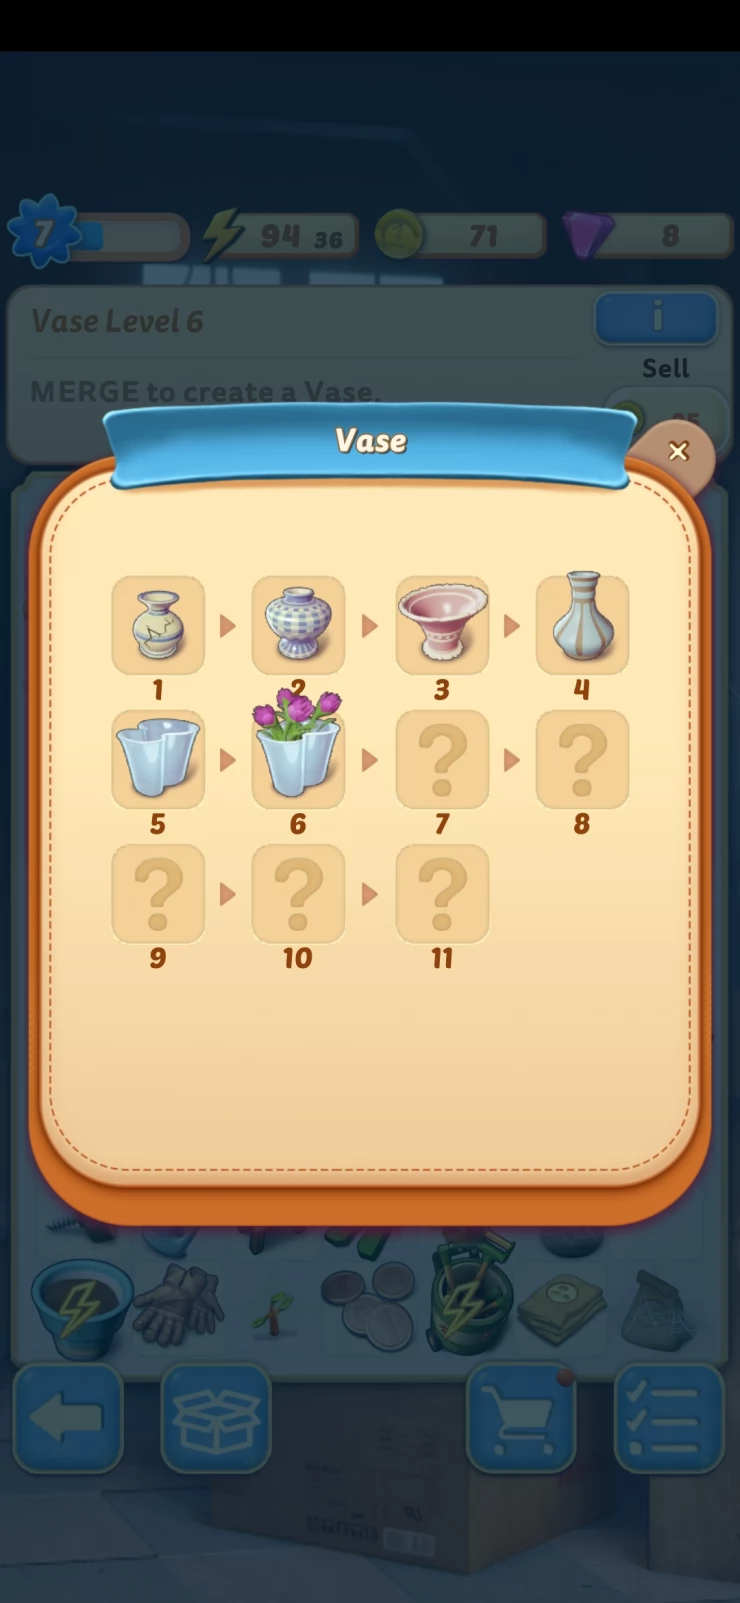 Vase Level 6 Spawns Seeds